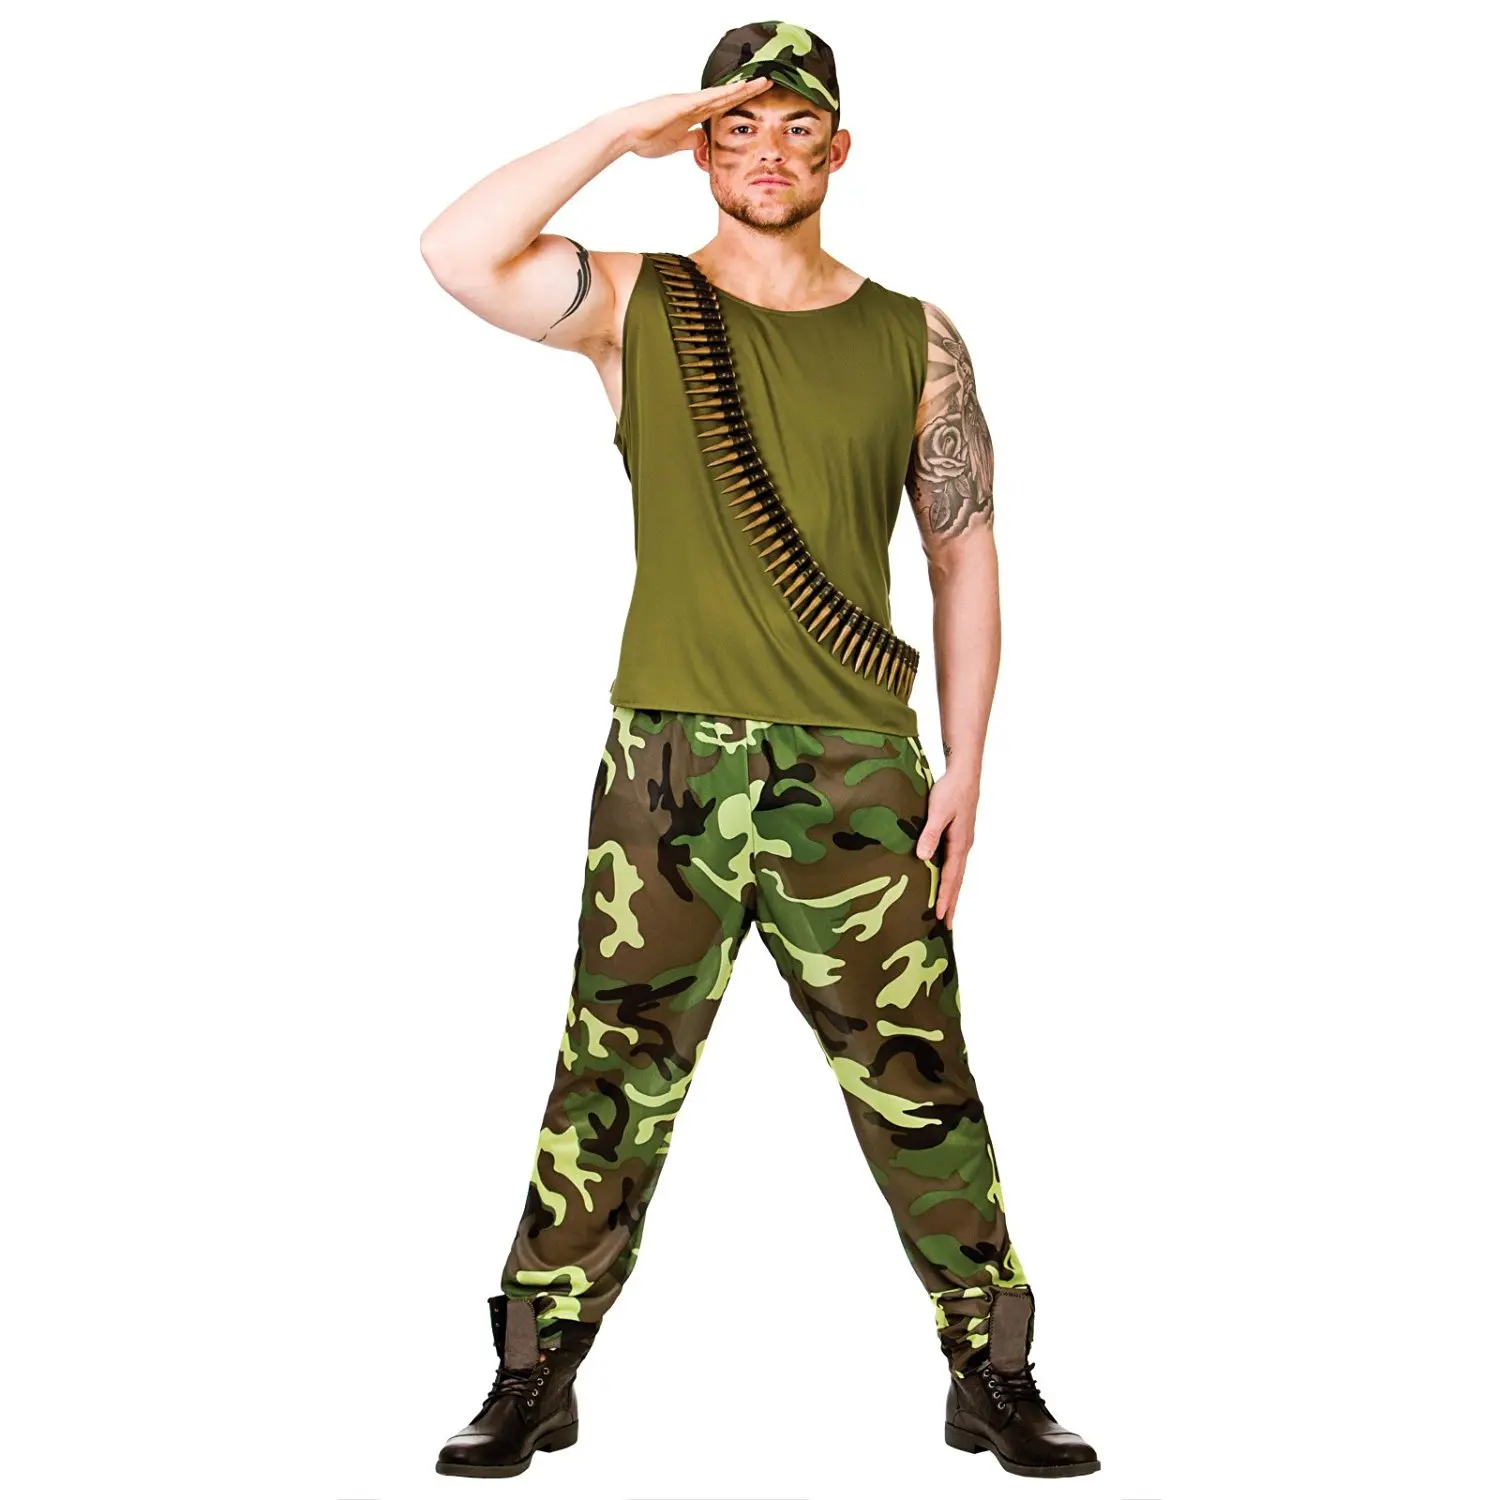 Male stripper army costume